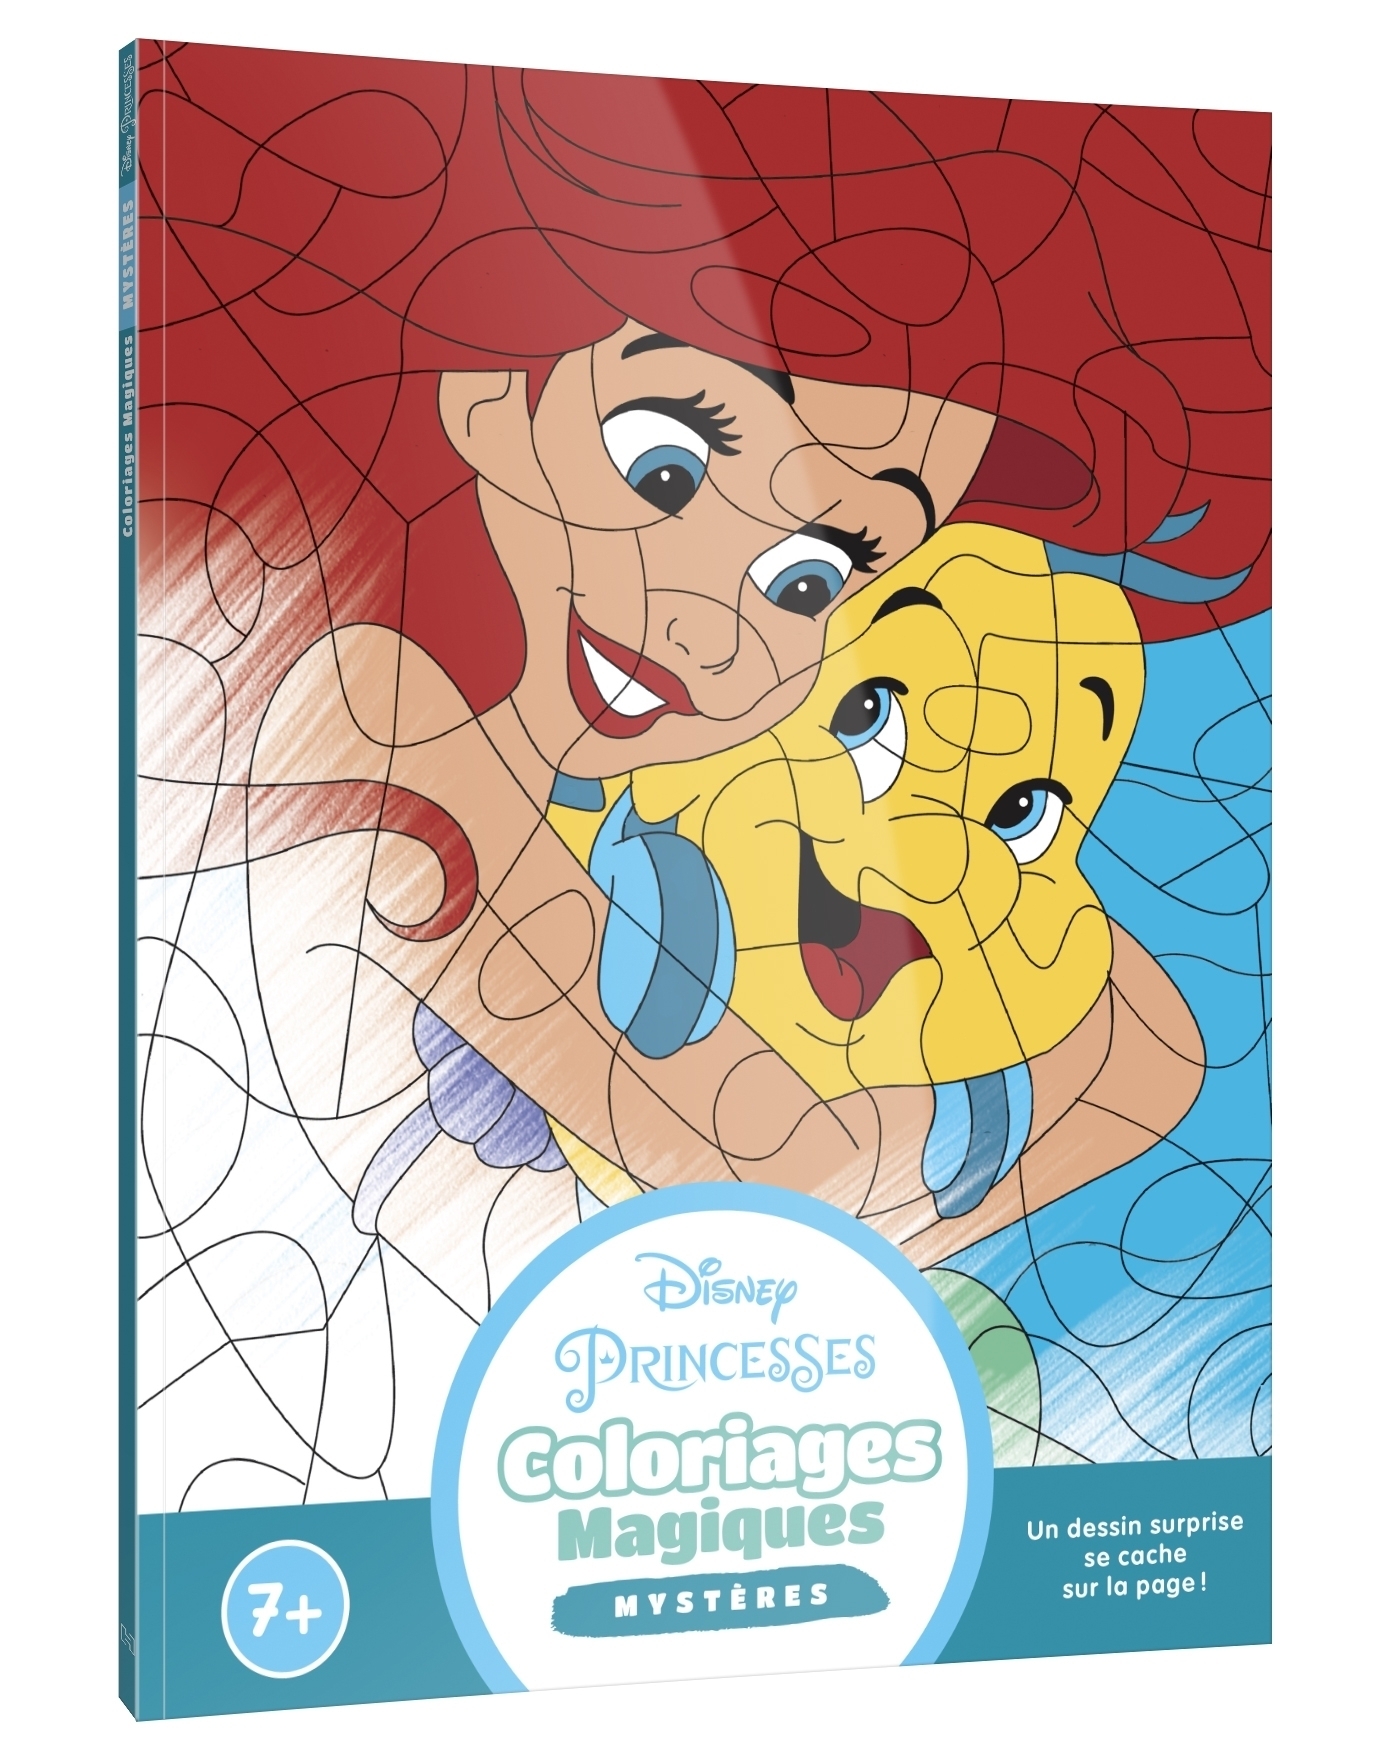 Disney Princesses - Livres de coloriages - Princesses - Walt Disney -  broché - Achat Livre